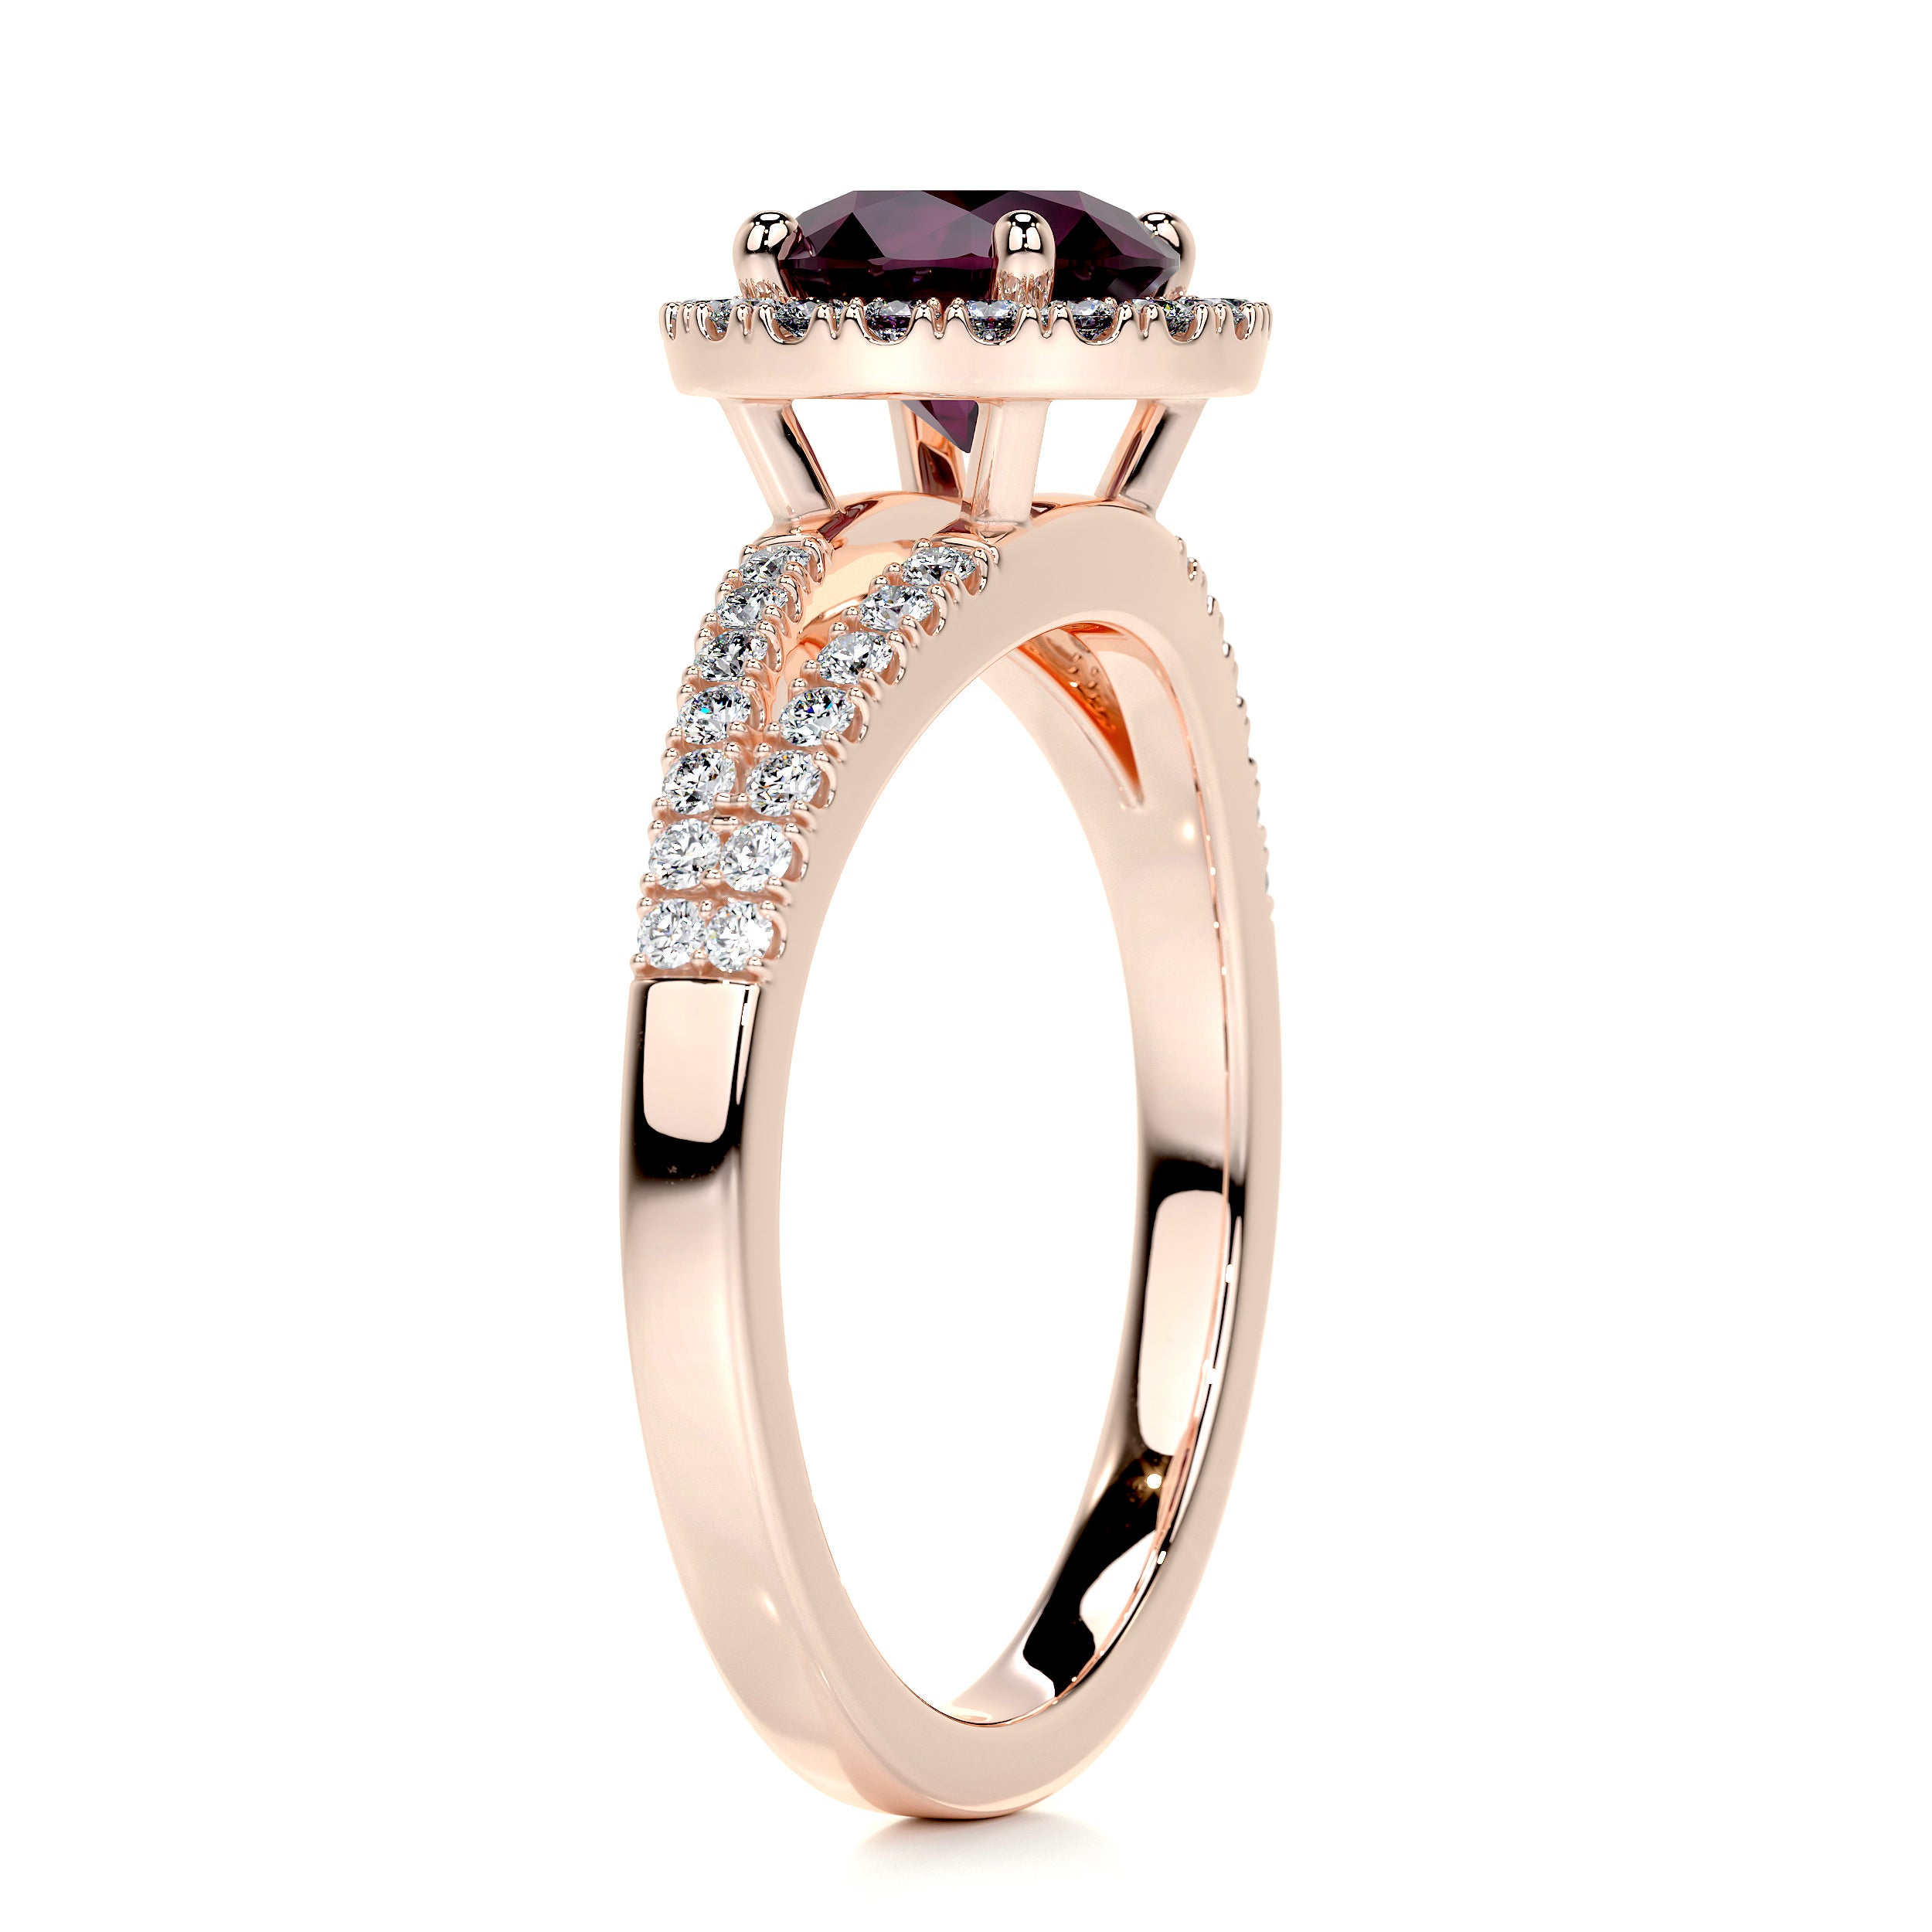 Hazel Gemstone & Diamonds Ring   (1.25 Carat) -14K Rose Gold